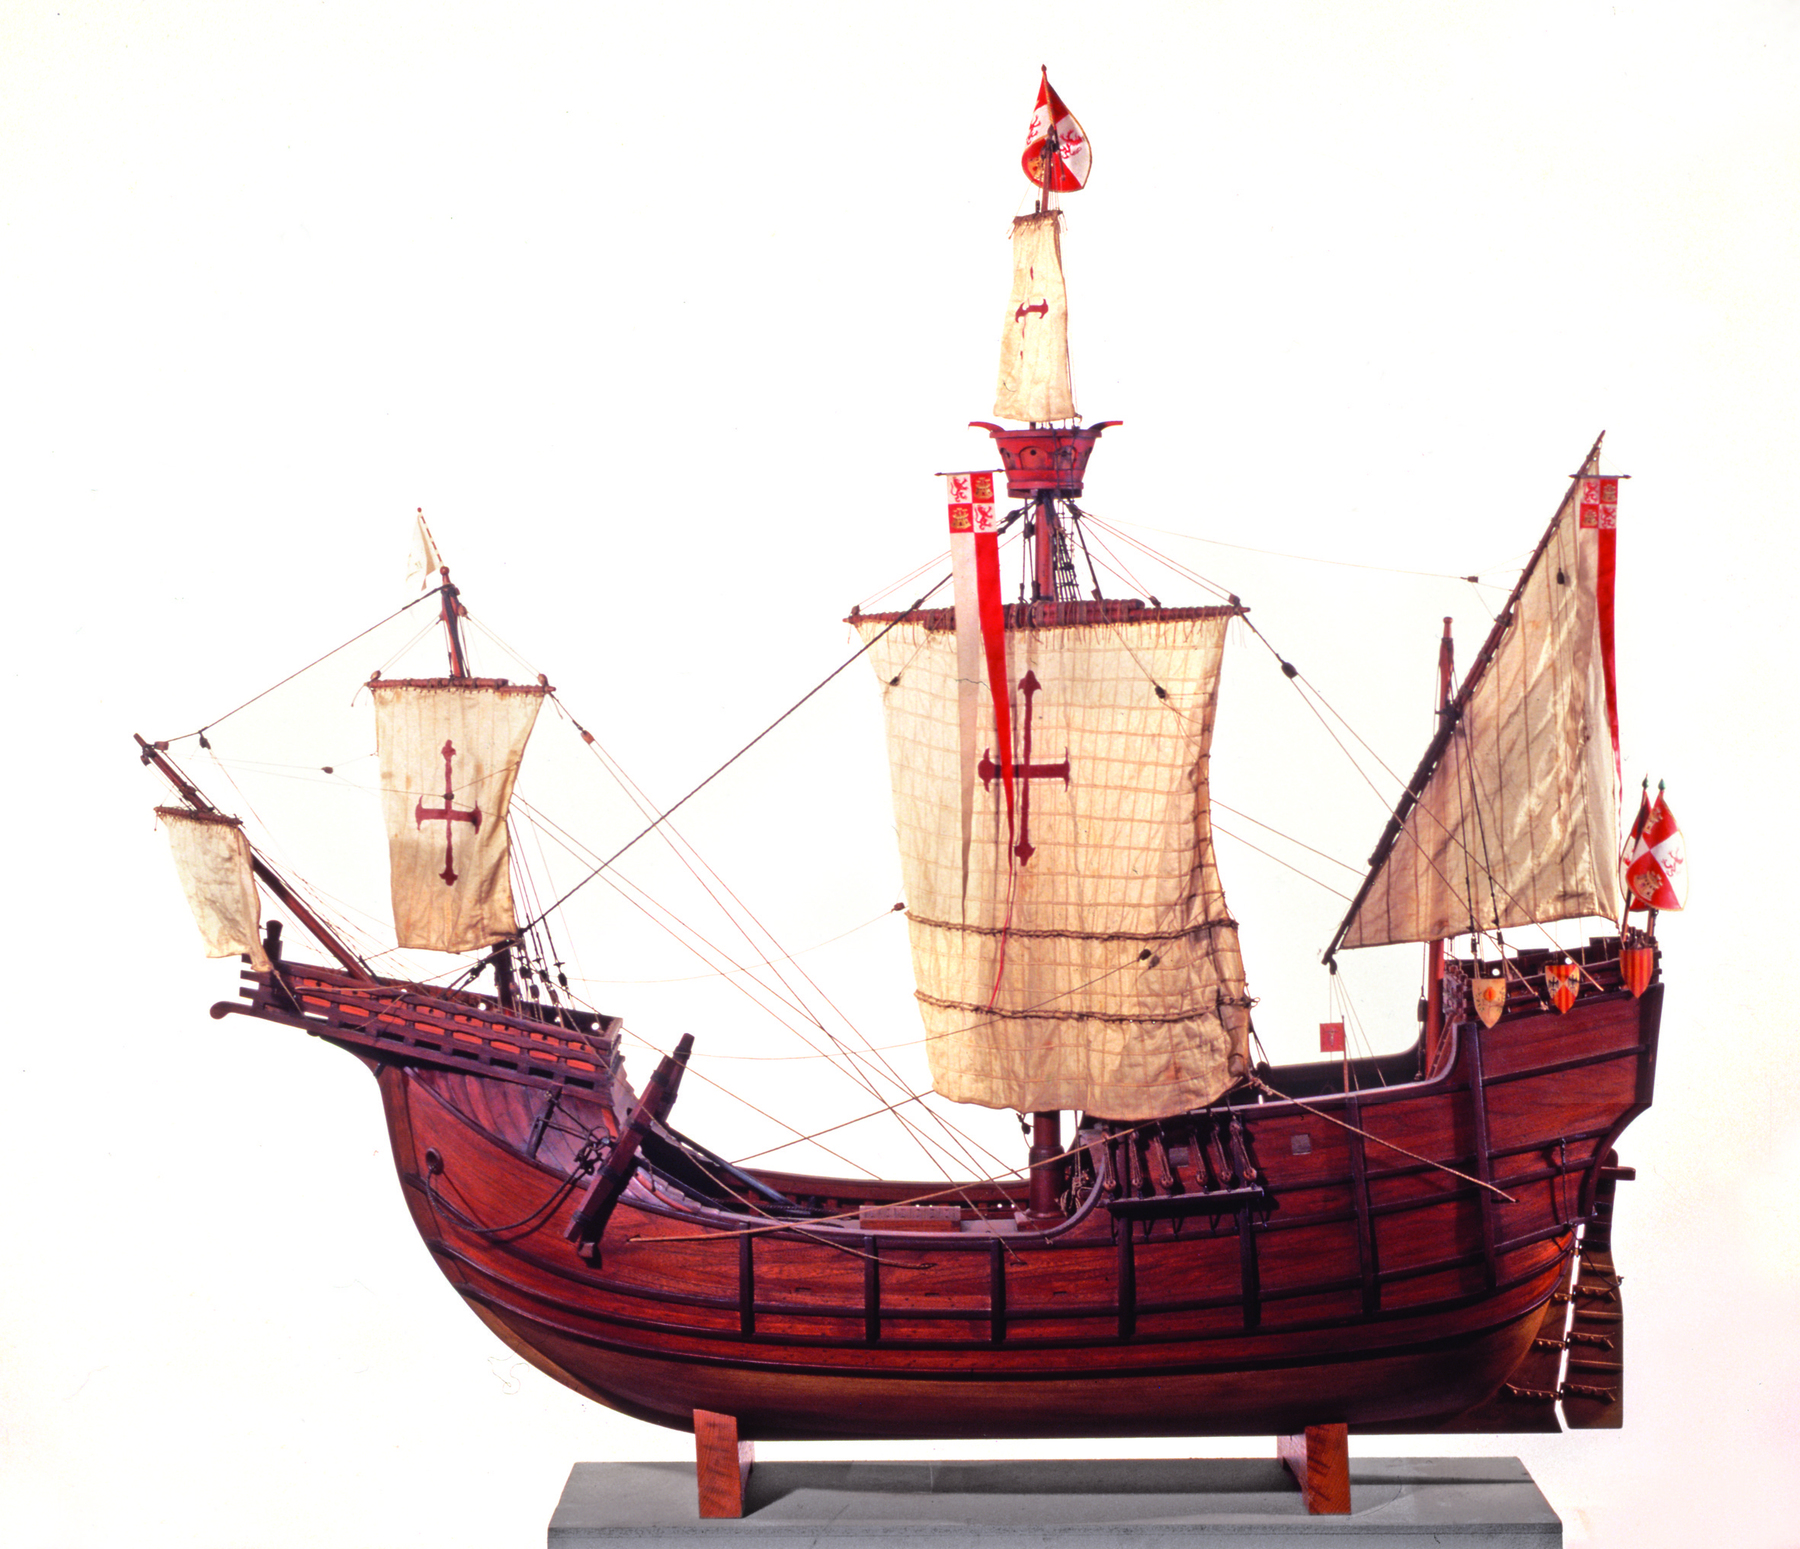 Ilustração: Um barco a velas. O casco do barco é marrom, e as velas são bege com um símbolo vermelho que se assemelha a uma cruz.